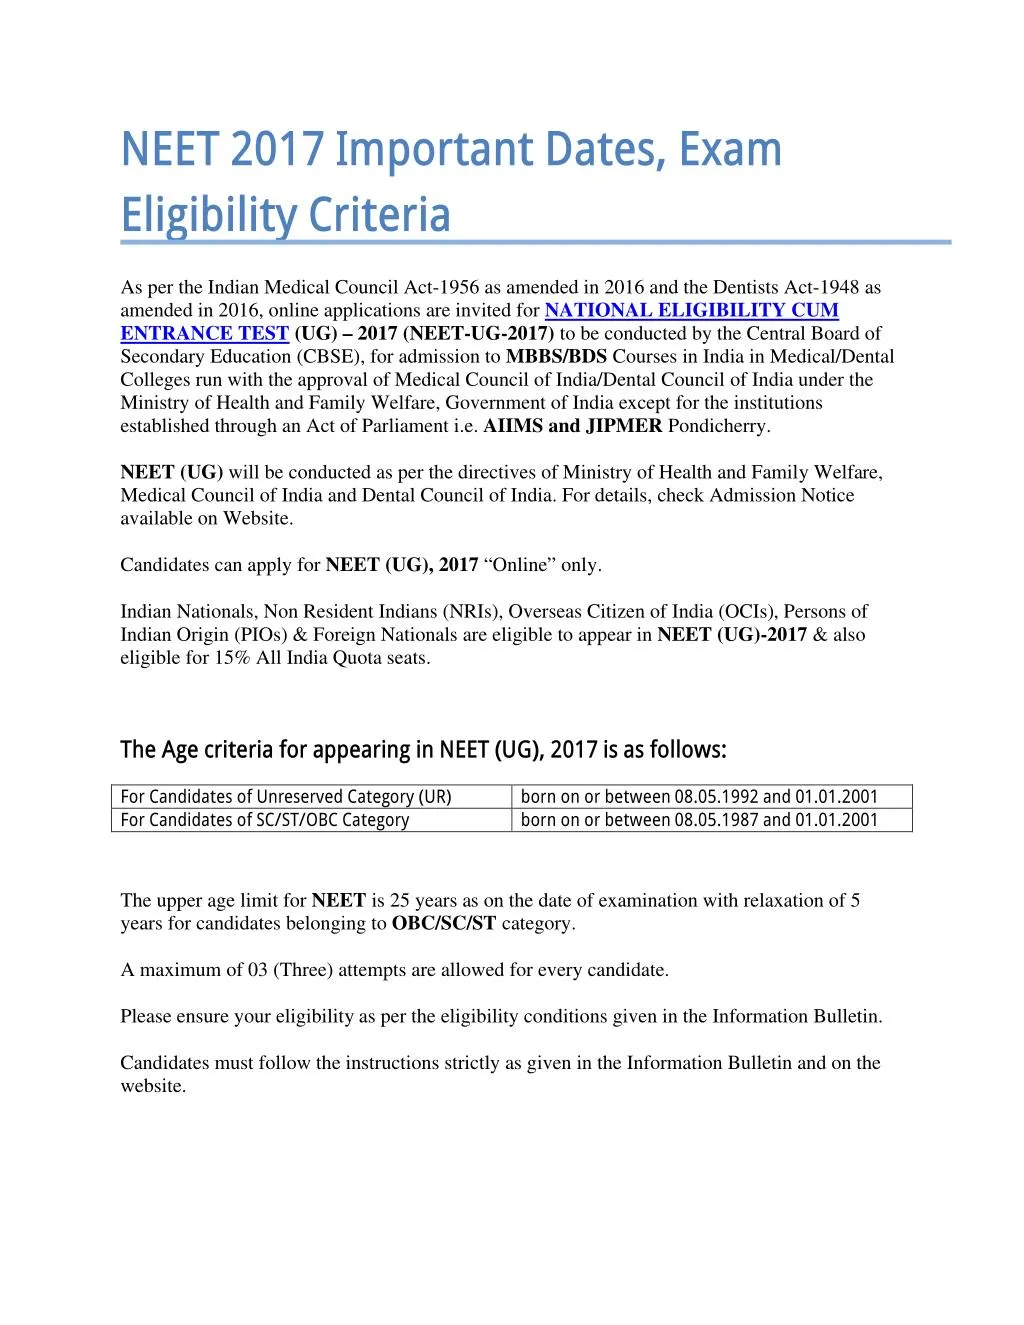 neet 2017 important dates exam eligibility